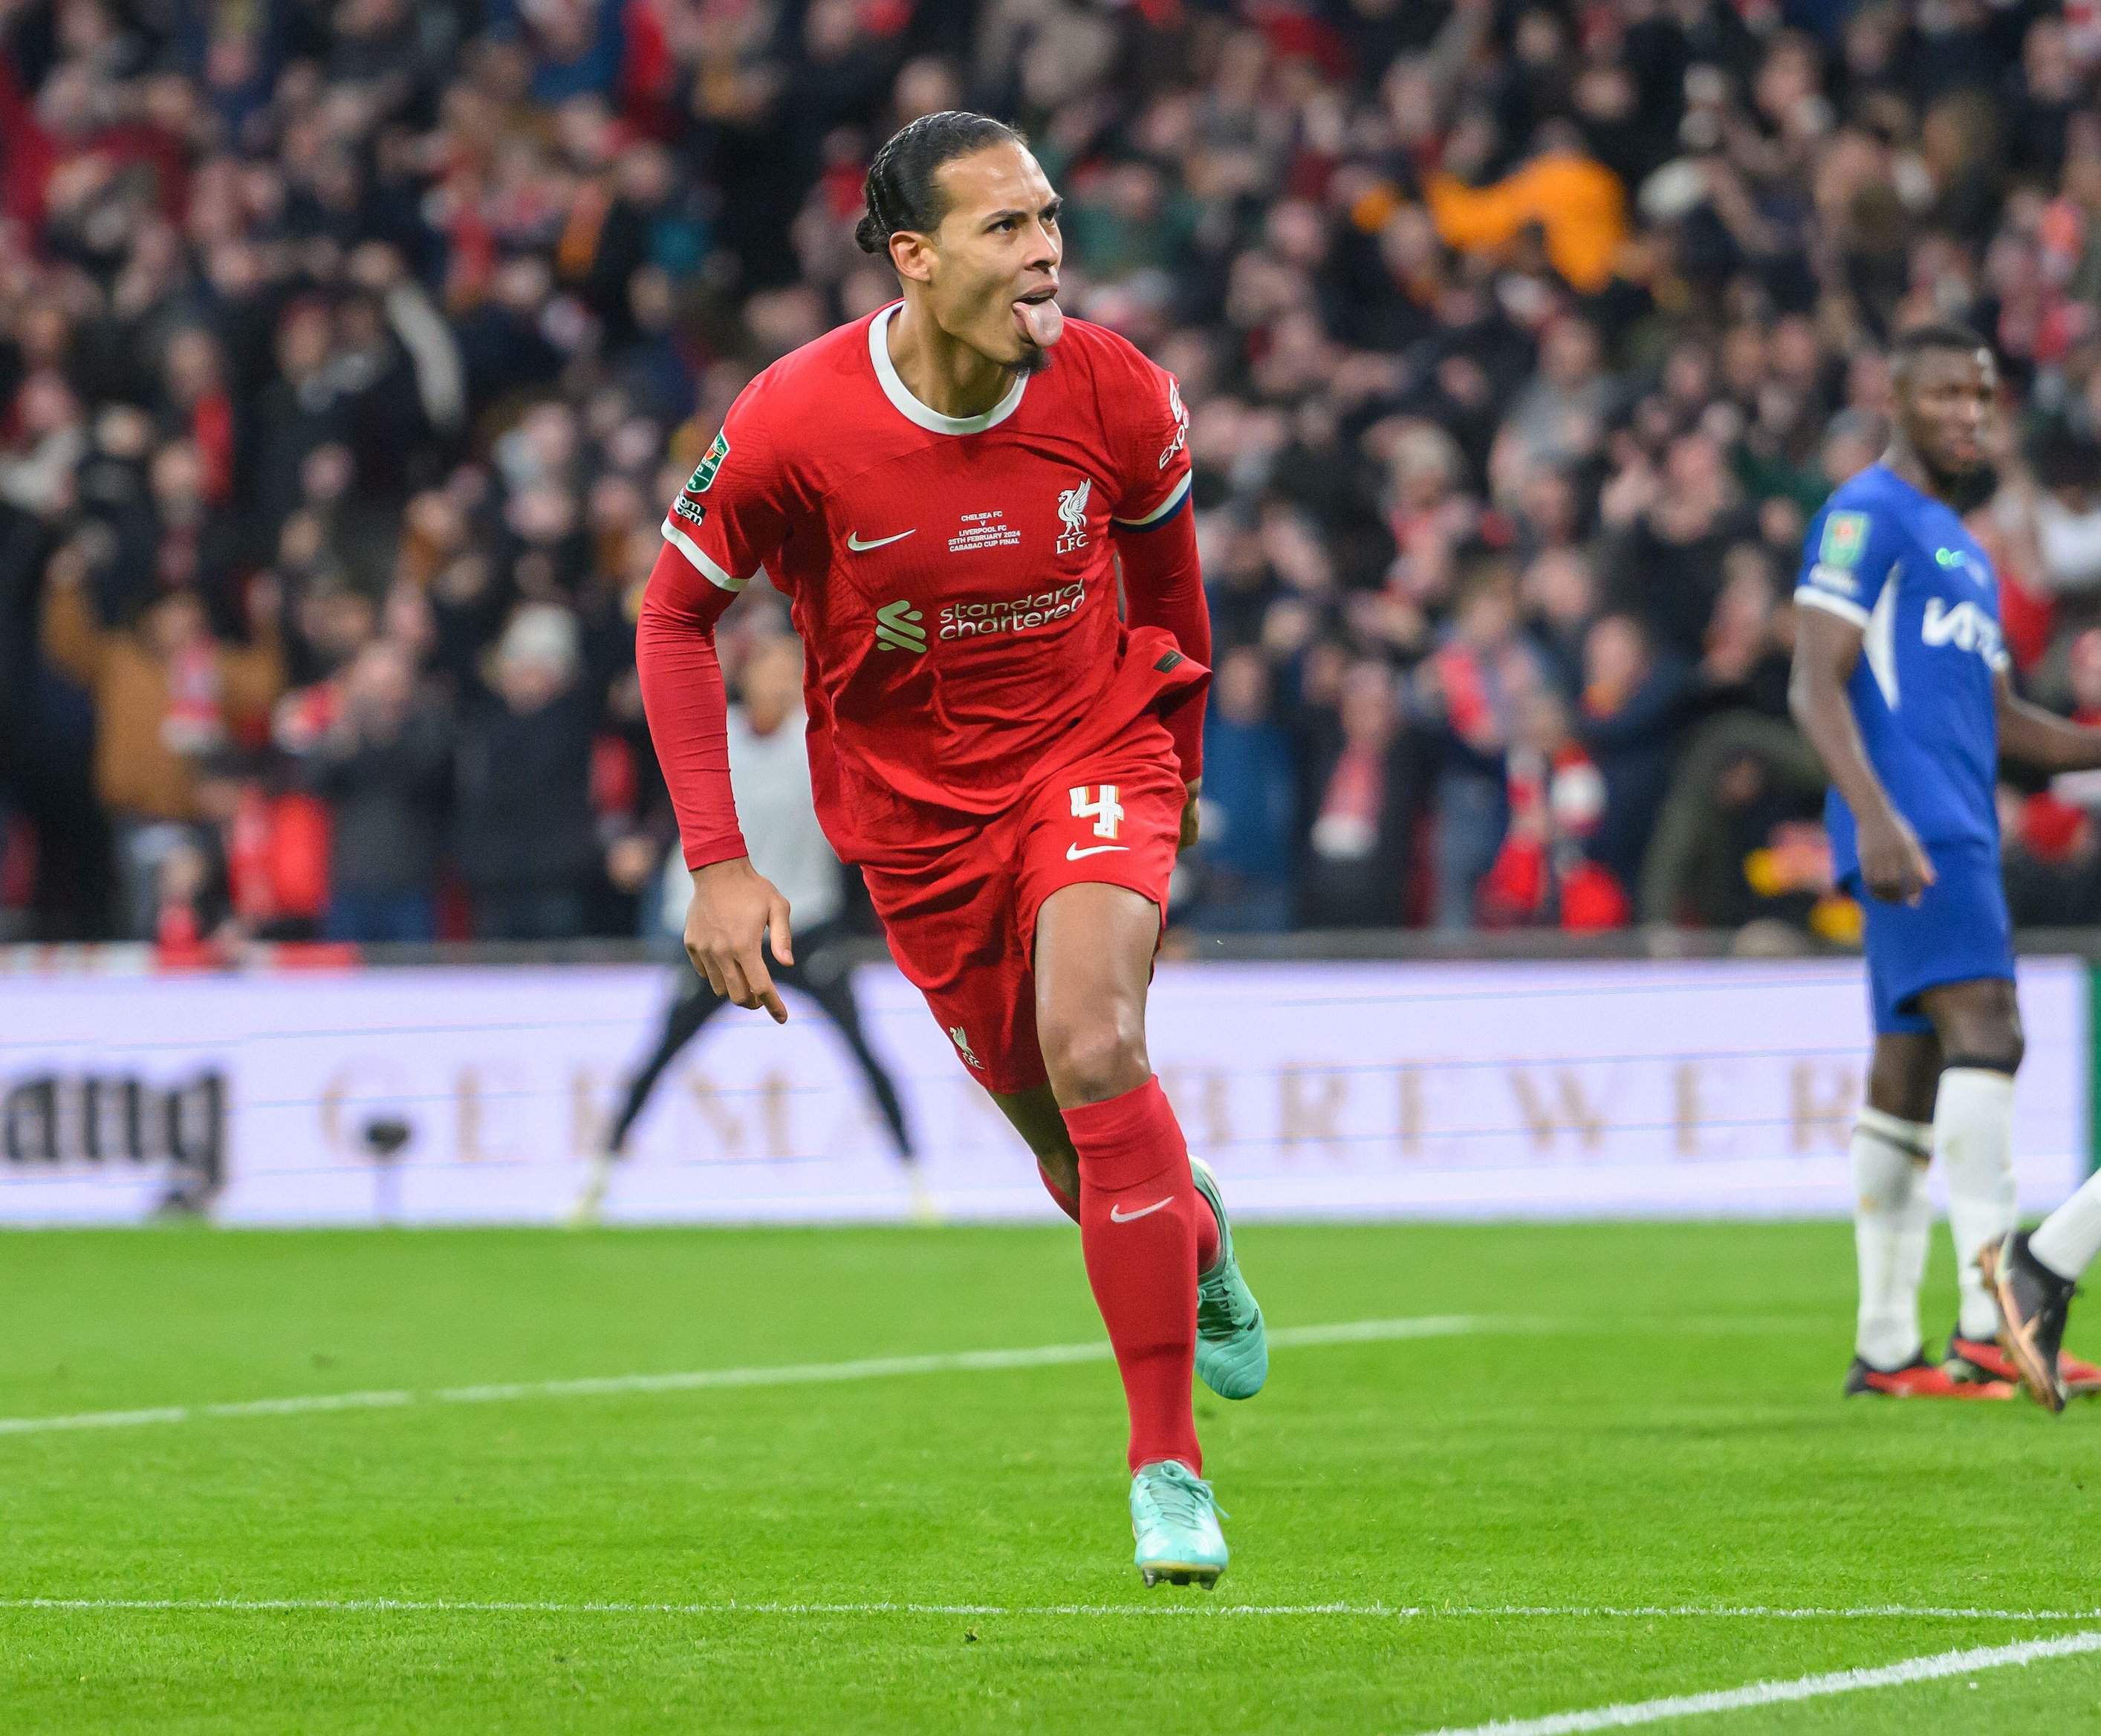 Der 75 Millionen Pfund teure Virgil van Dijk erzielte im Wembley-Stadion den Siegtreffer für Liverpool gegen Chelsea